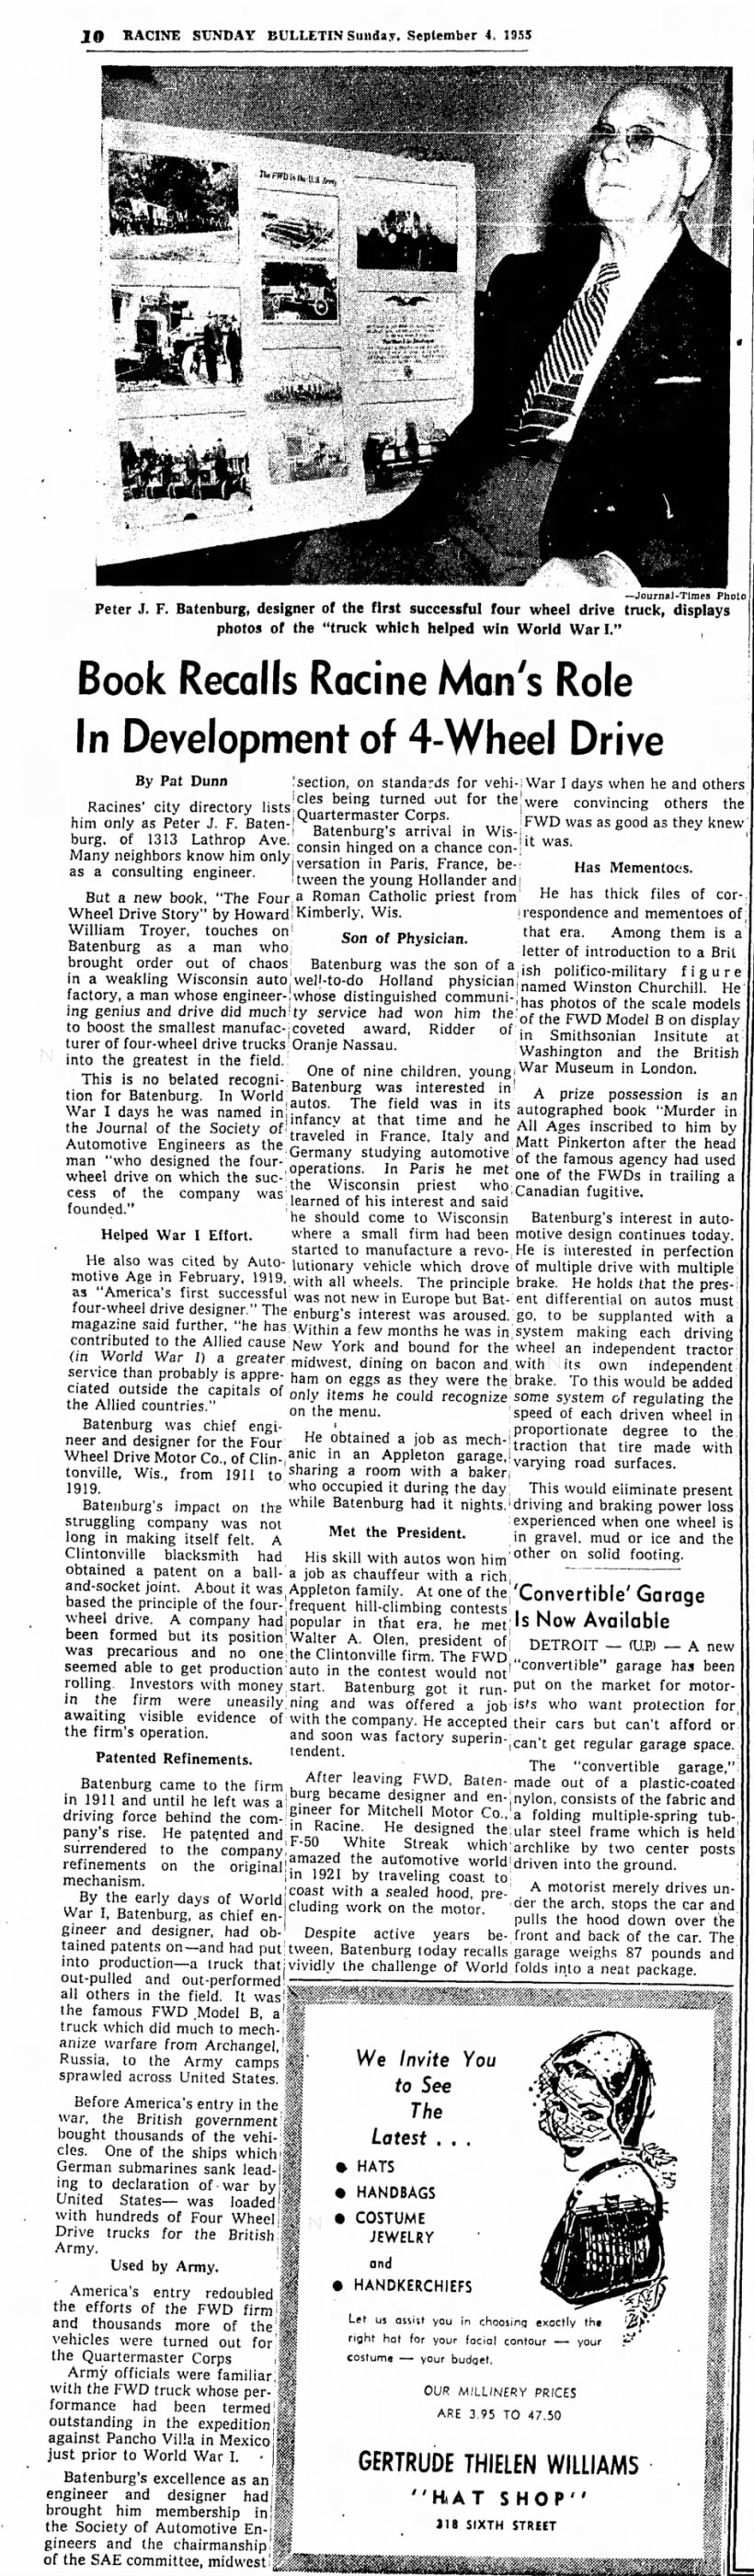 Racine Sunday Bulletin
September 4, 1955